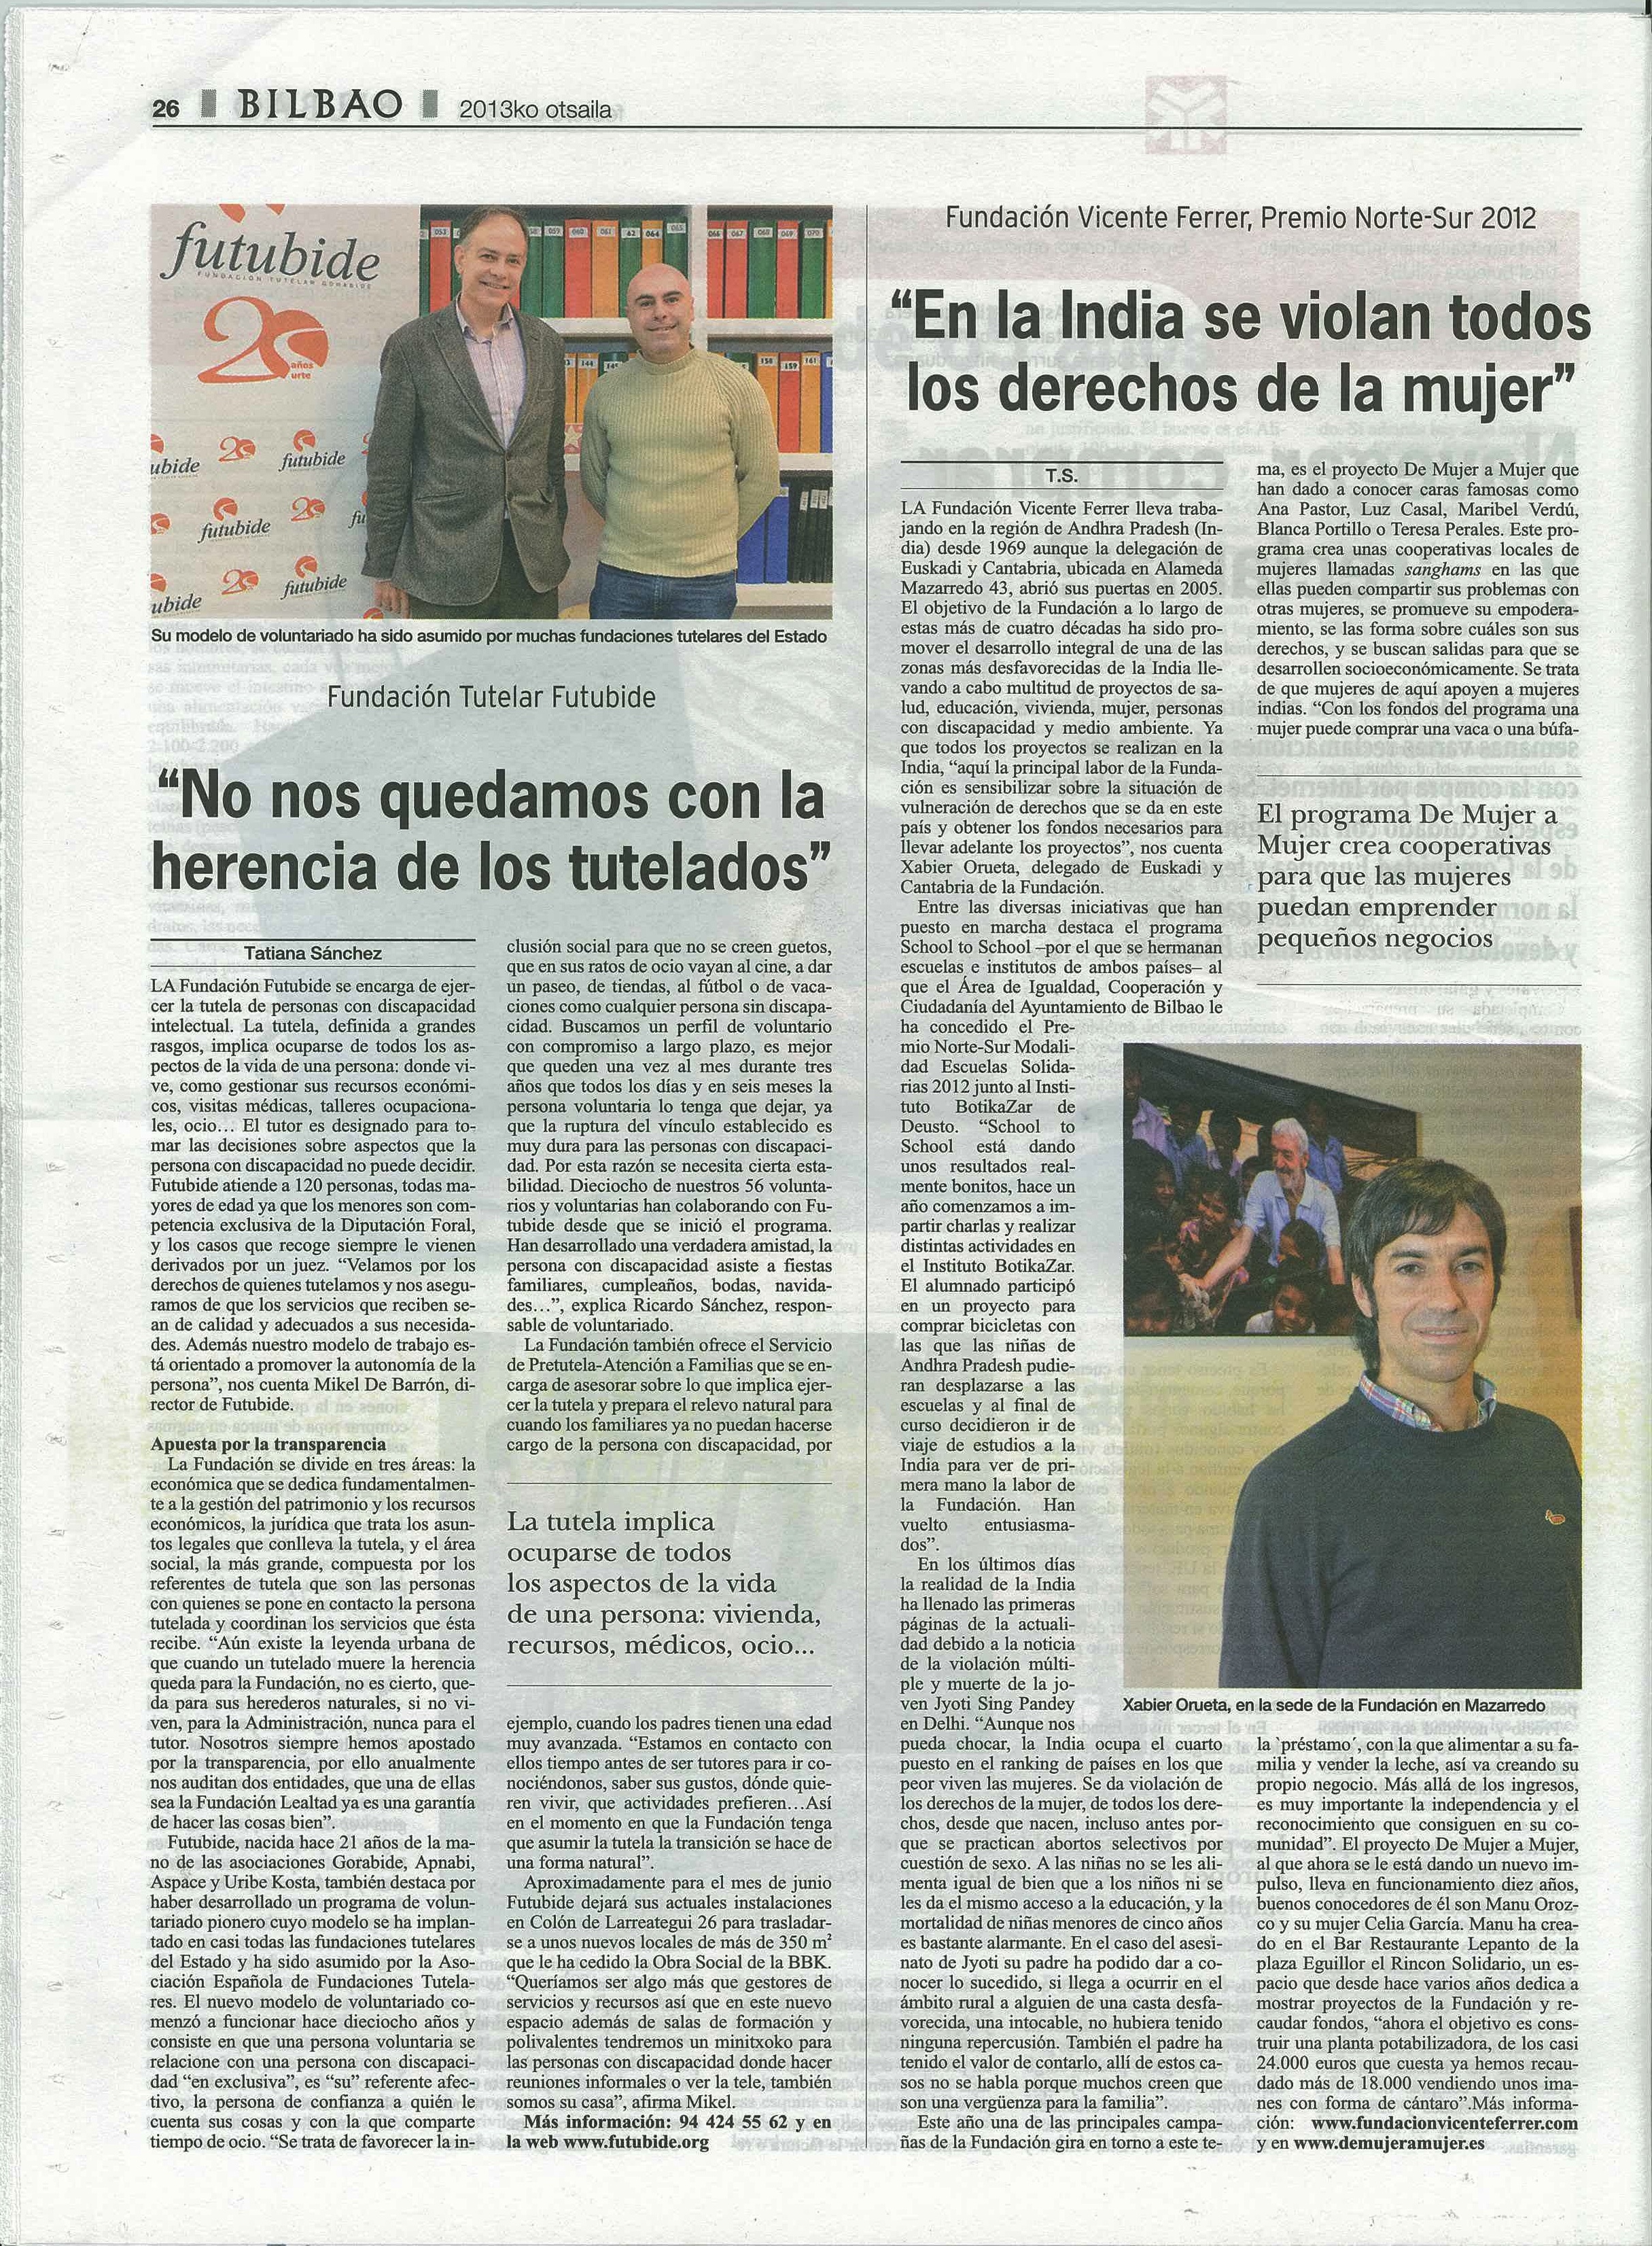 Futubide en Periódico Bilbao. Gabinete de Prensa Spb_servicios periodísticos